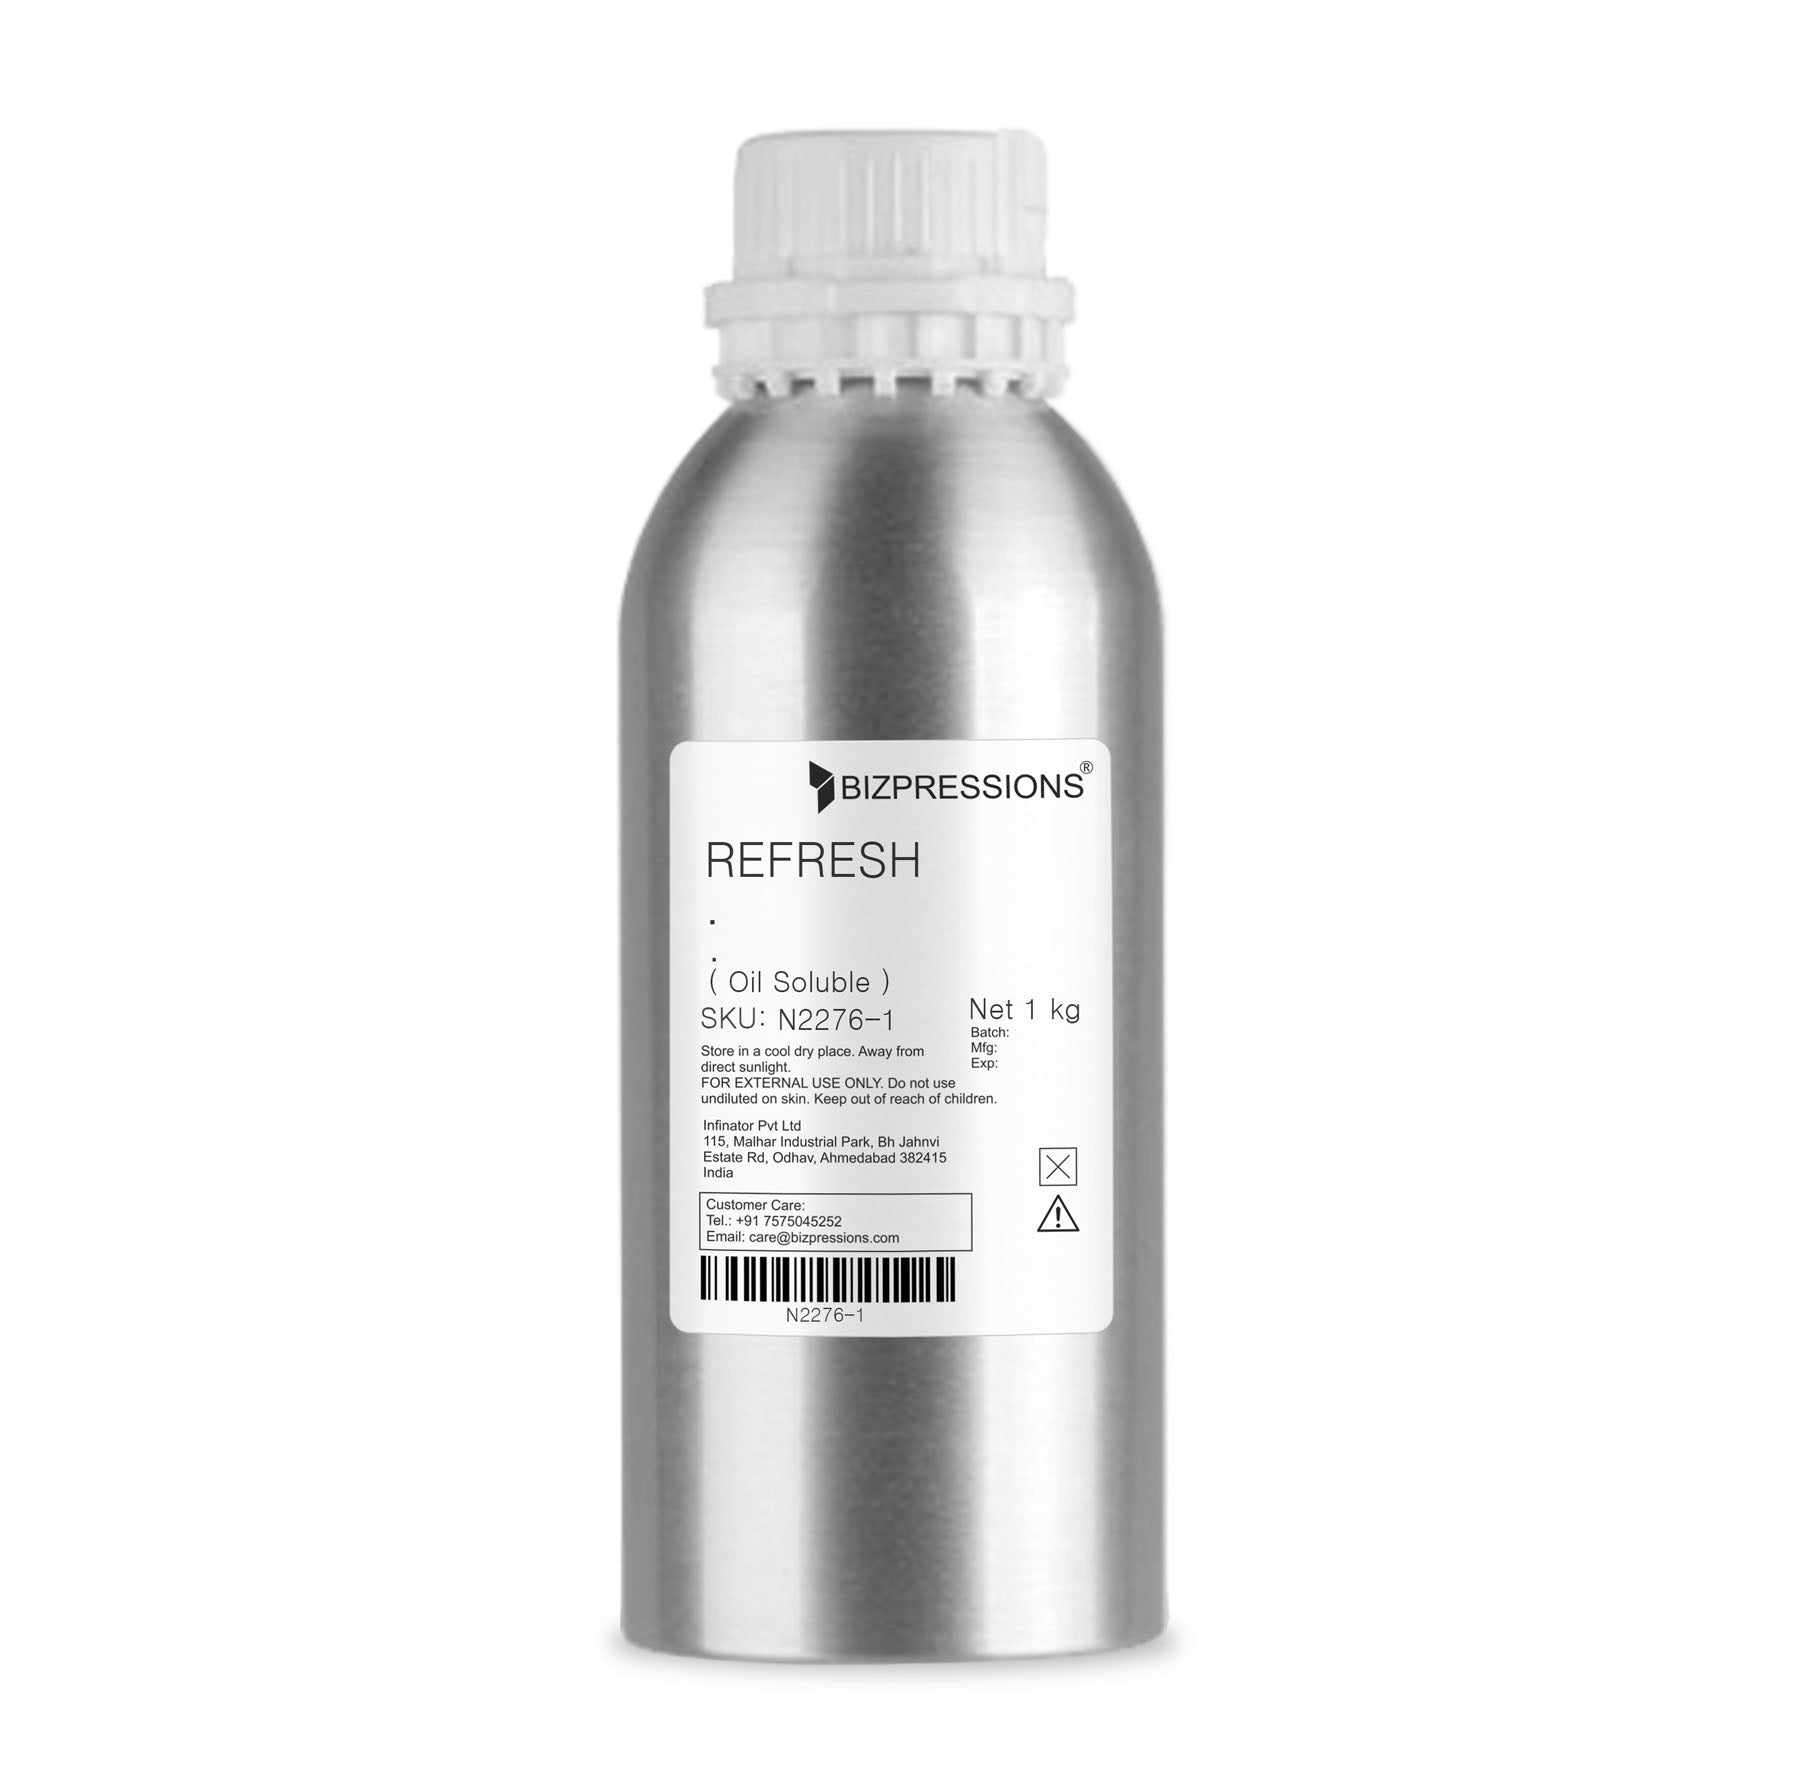 REFRESH - Fragrance ( Oil Soluble ) - 1 kg